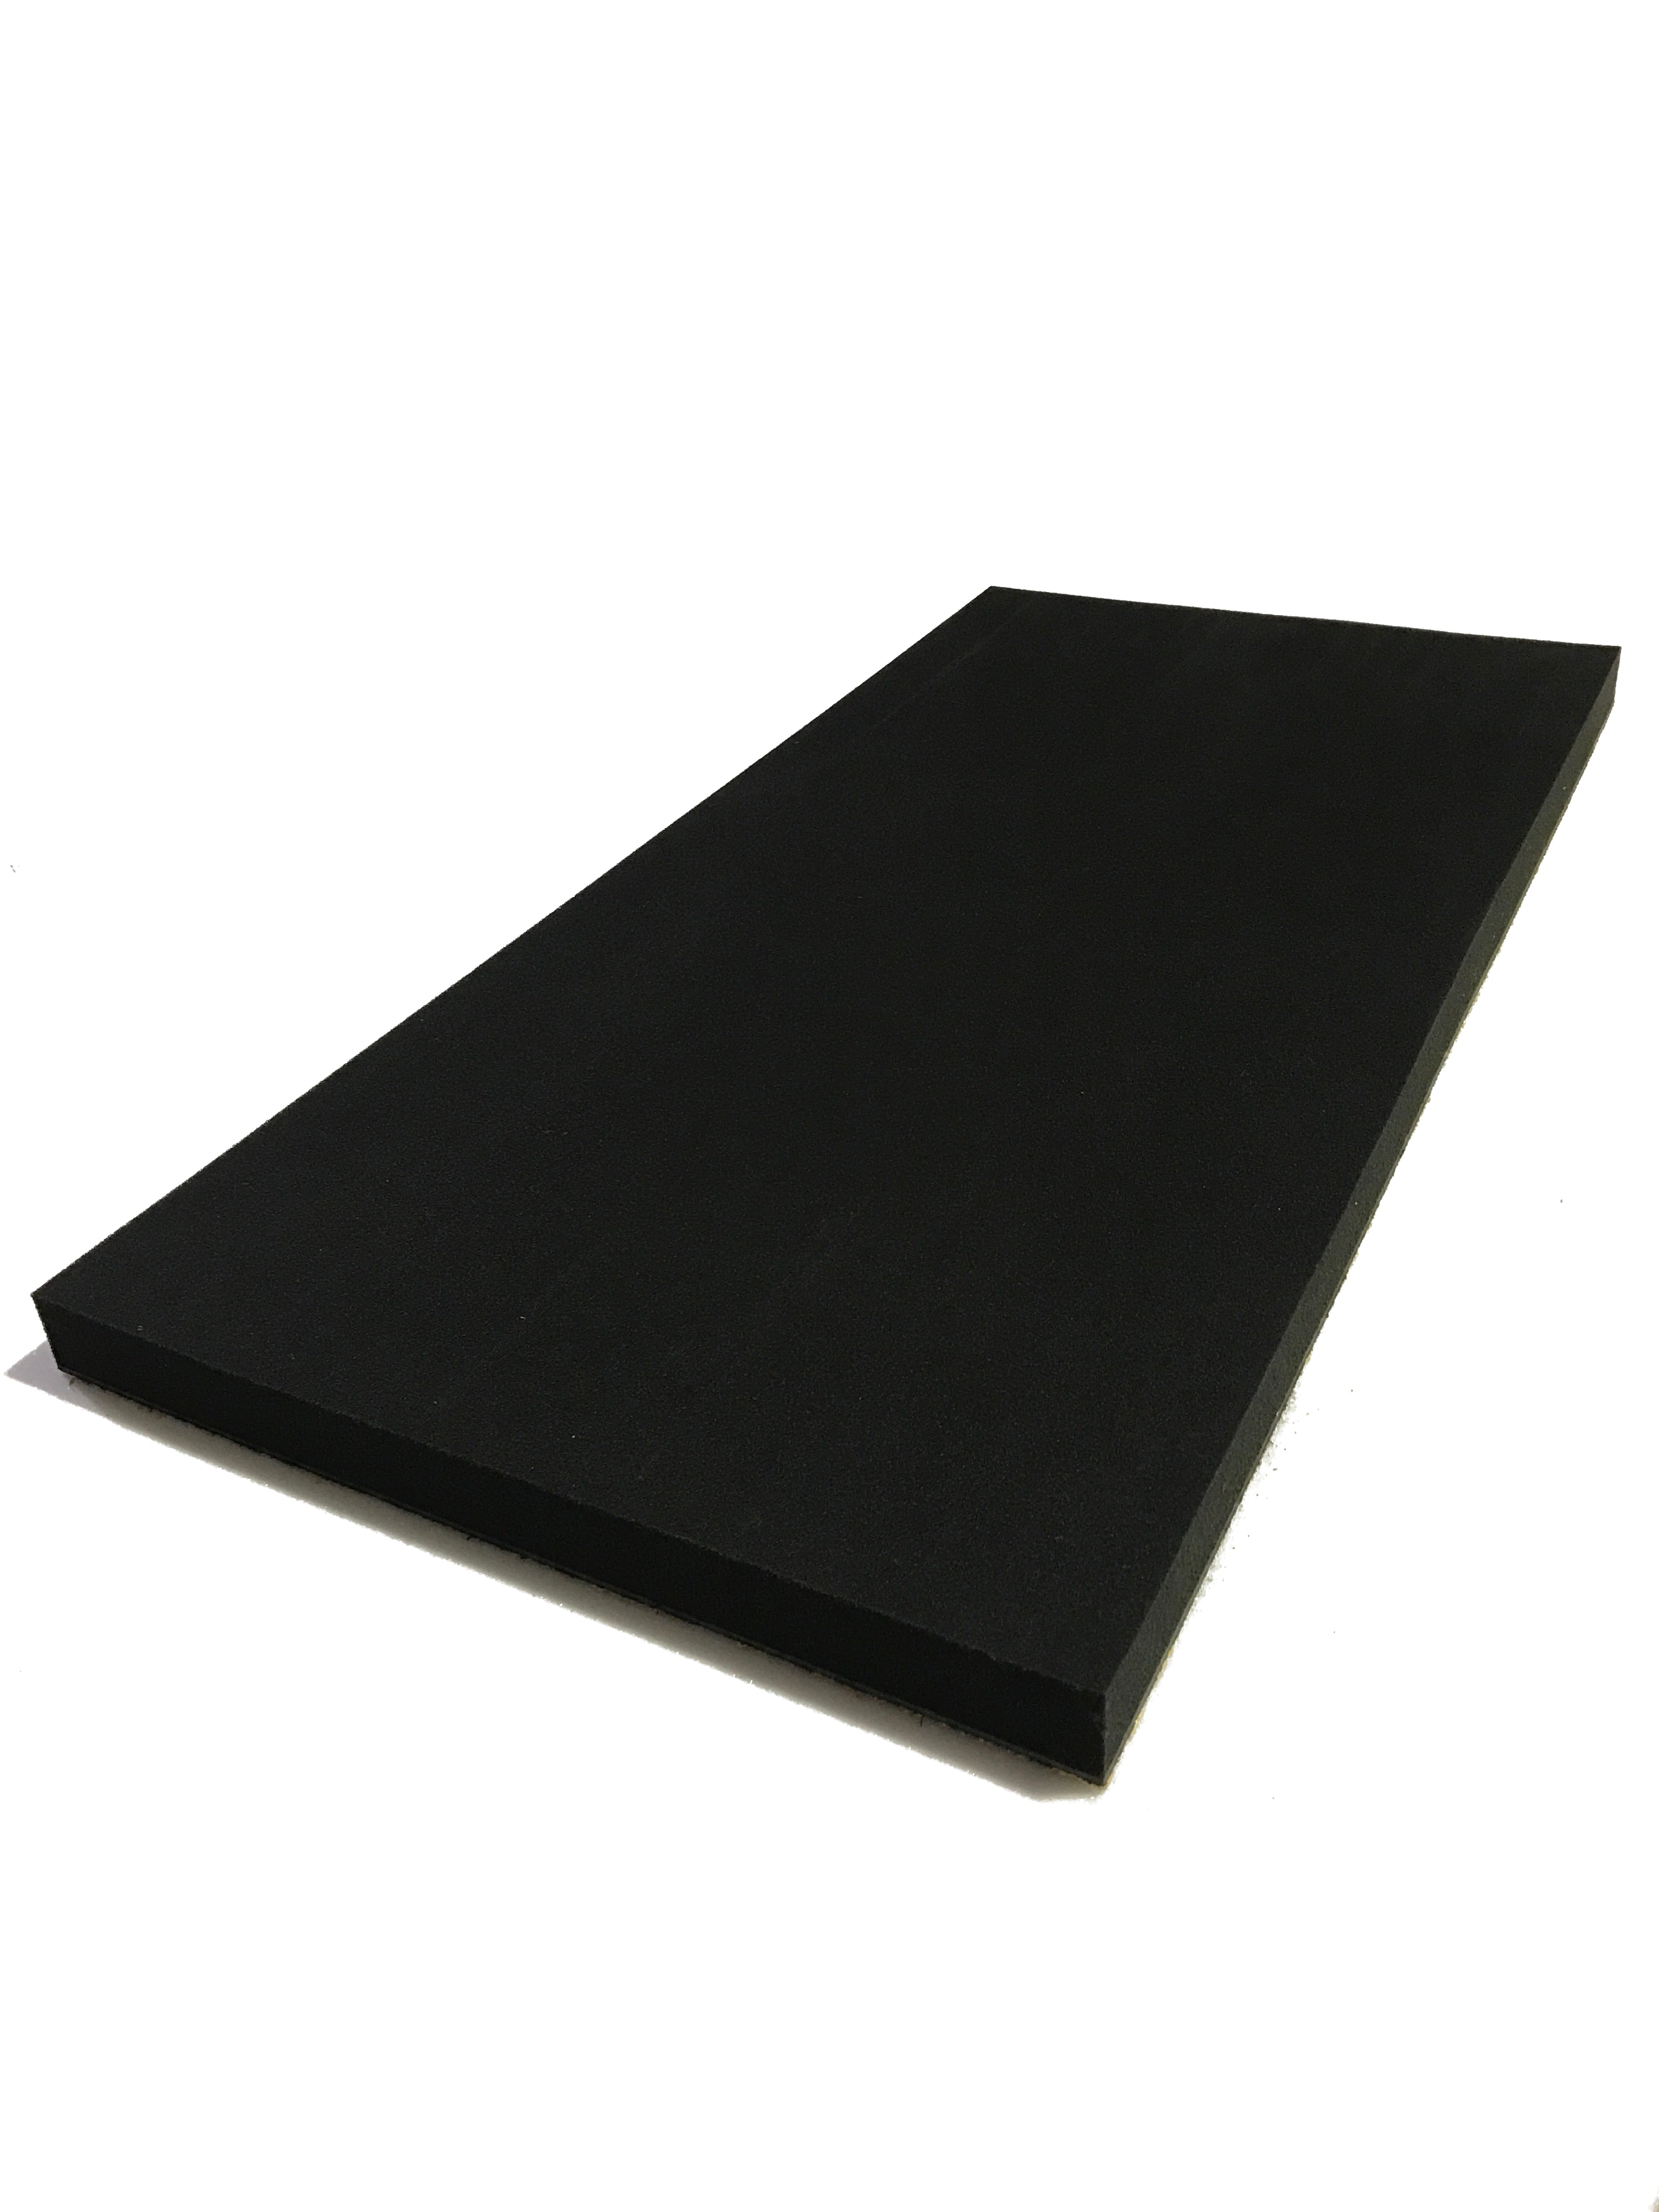 Prestige factor Of later Silent Panel 5kg/50mm - MLV & Acoustic Foam Composite | Advanced Acoustics